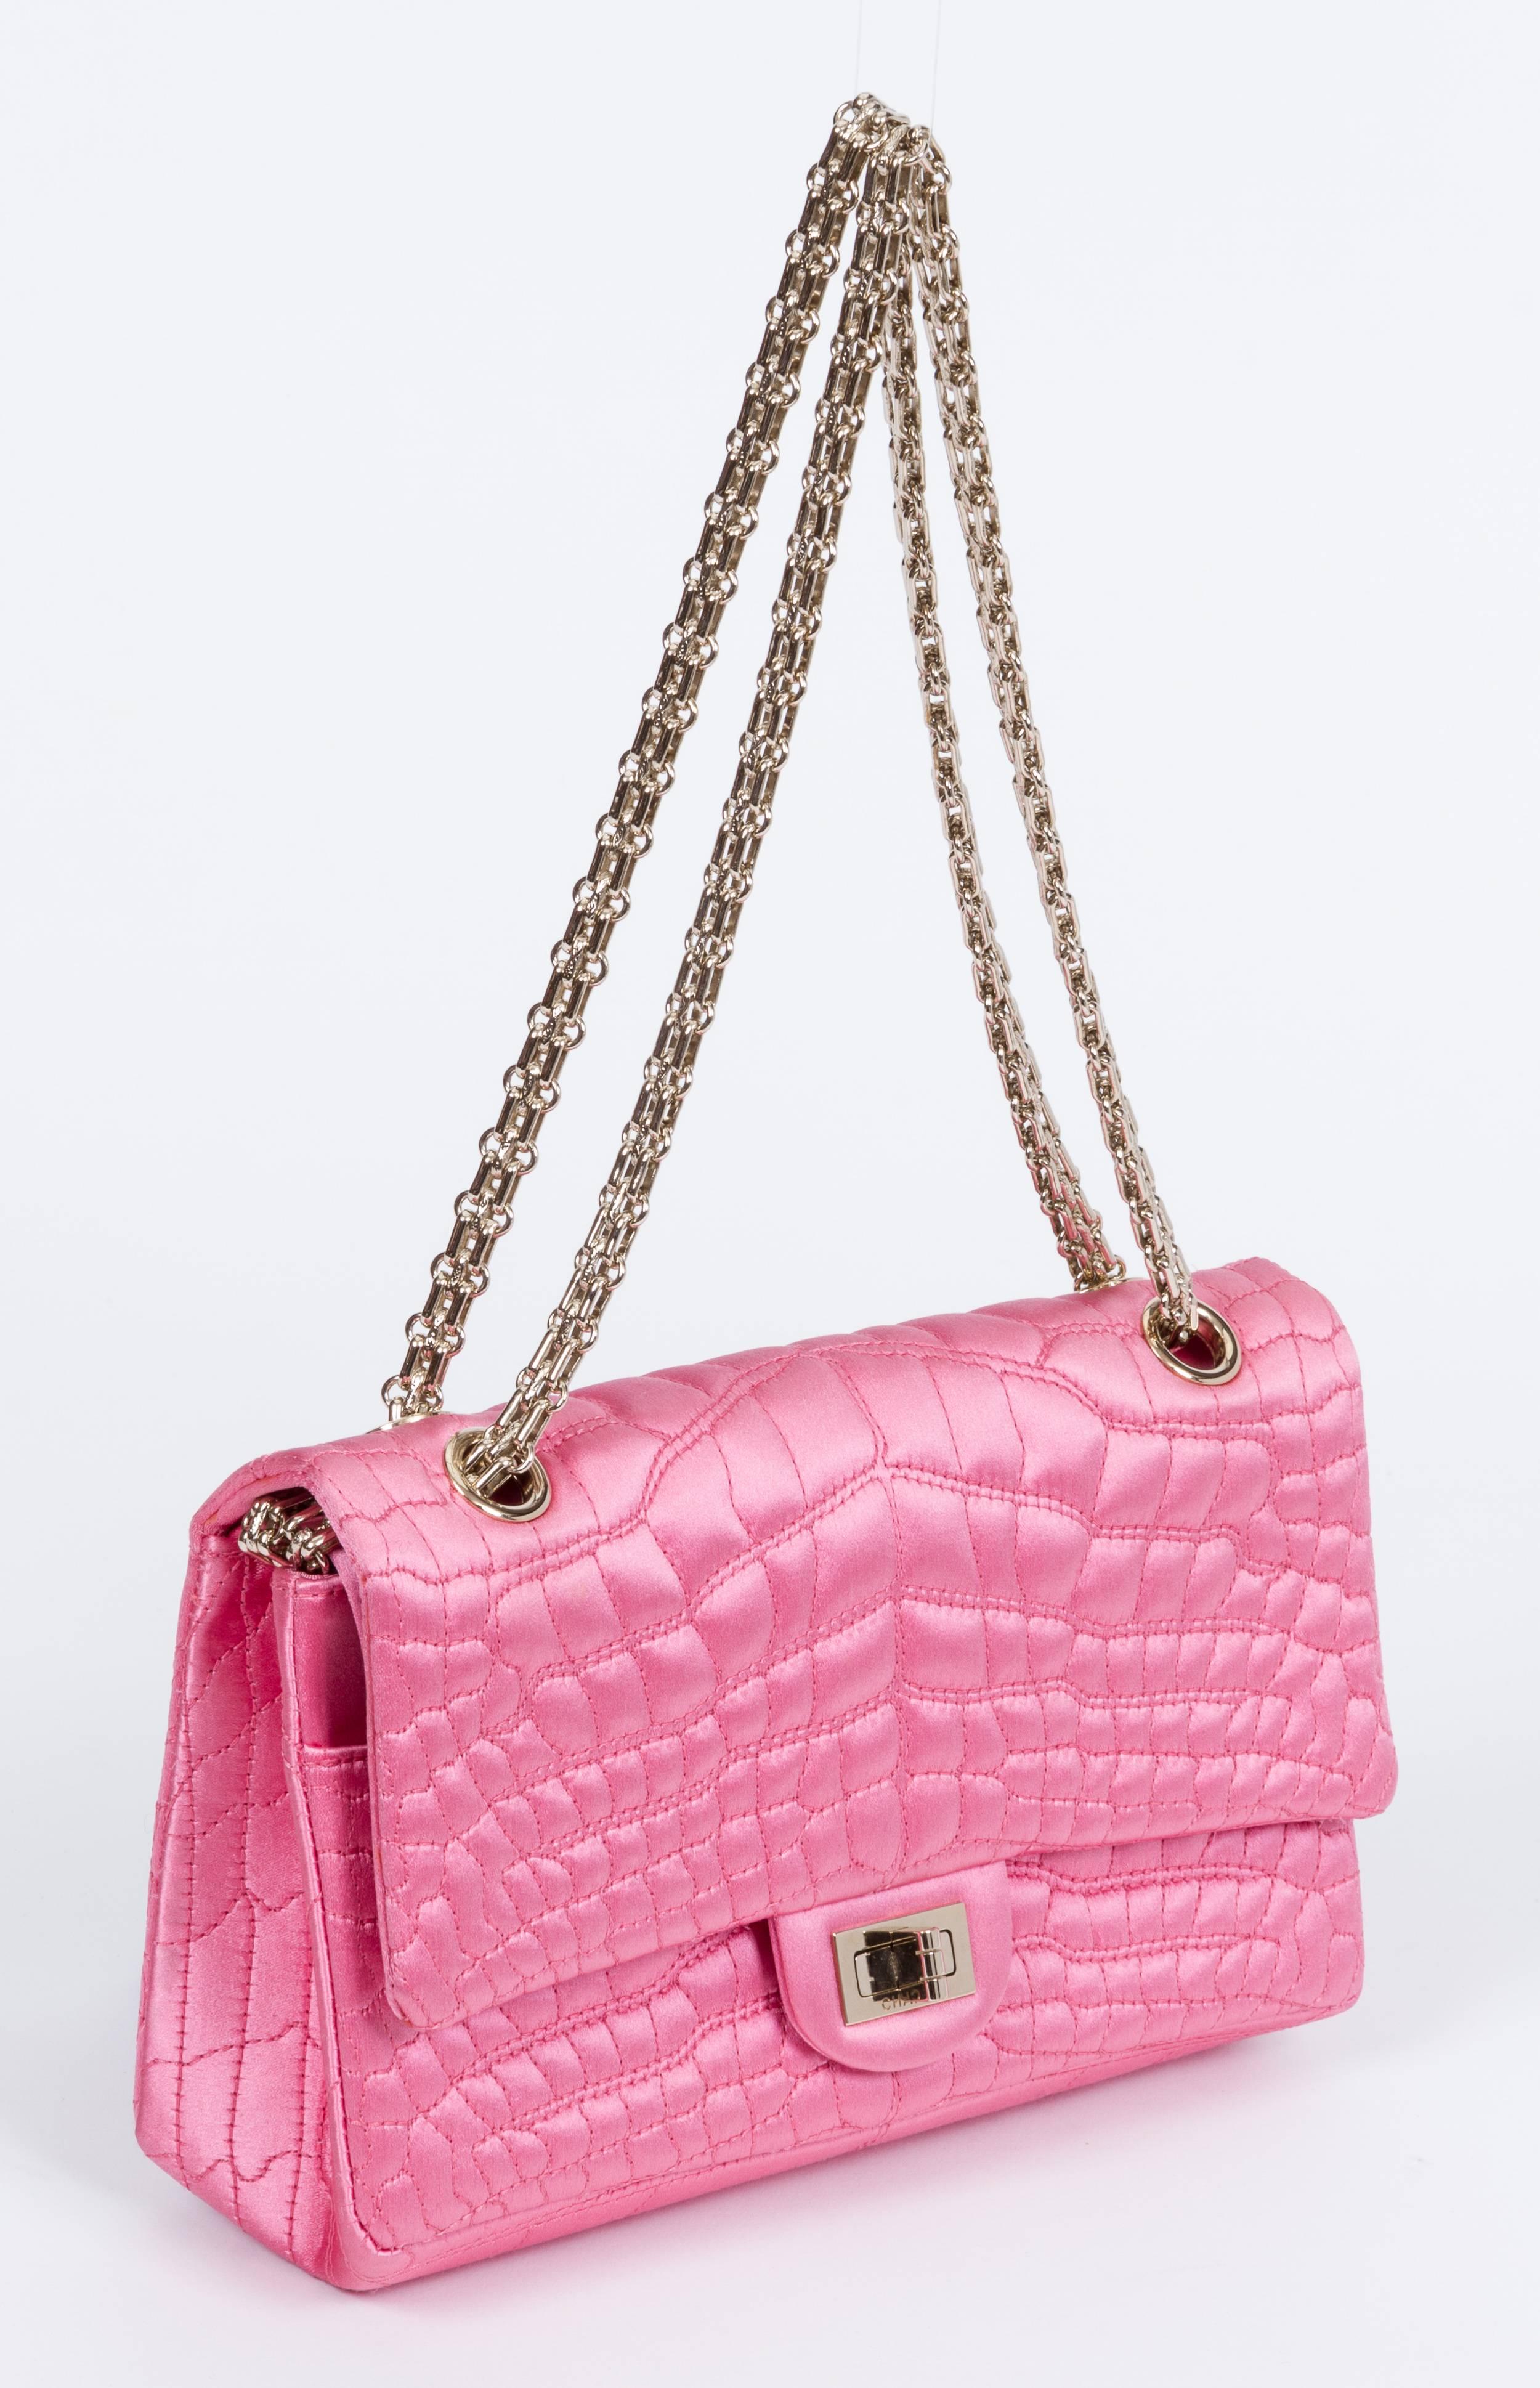 chanel pink satin bag